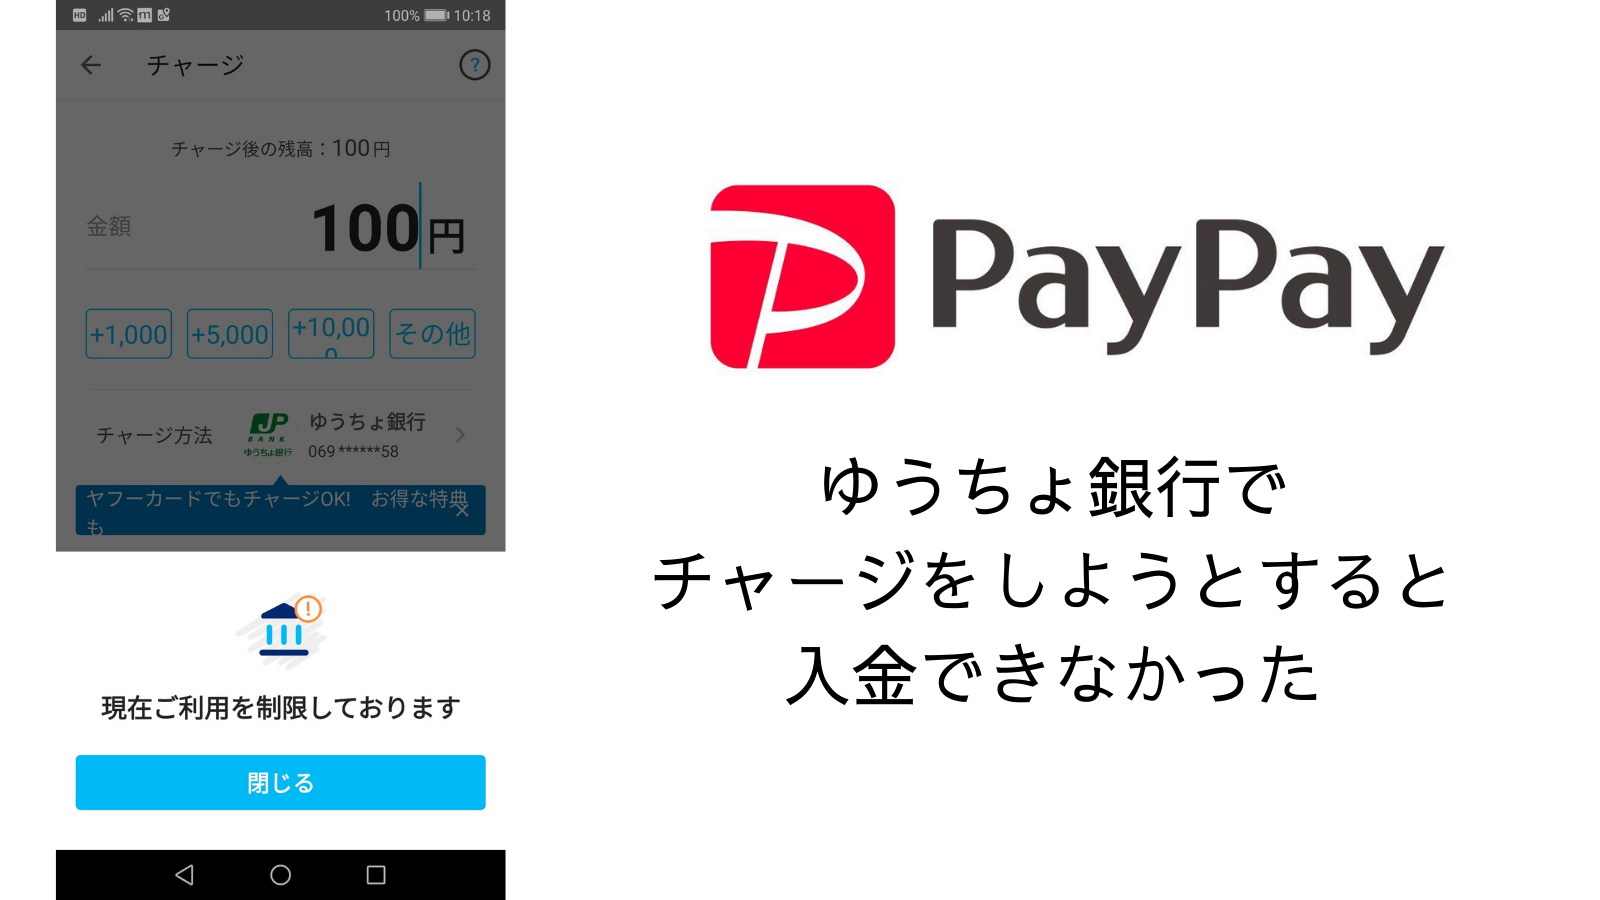 ゆうちょ チャージ Paypay